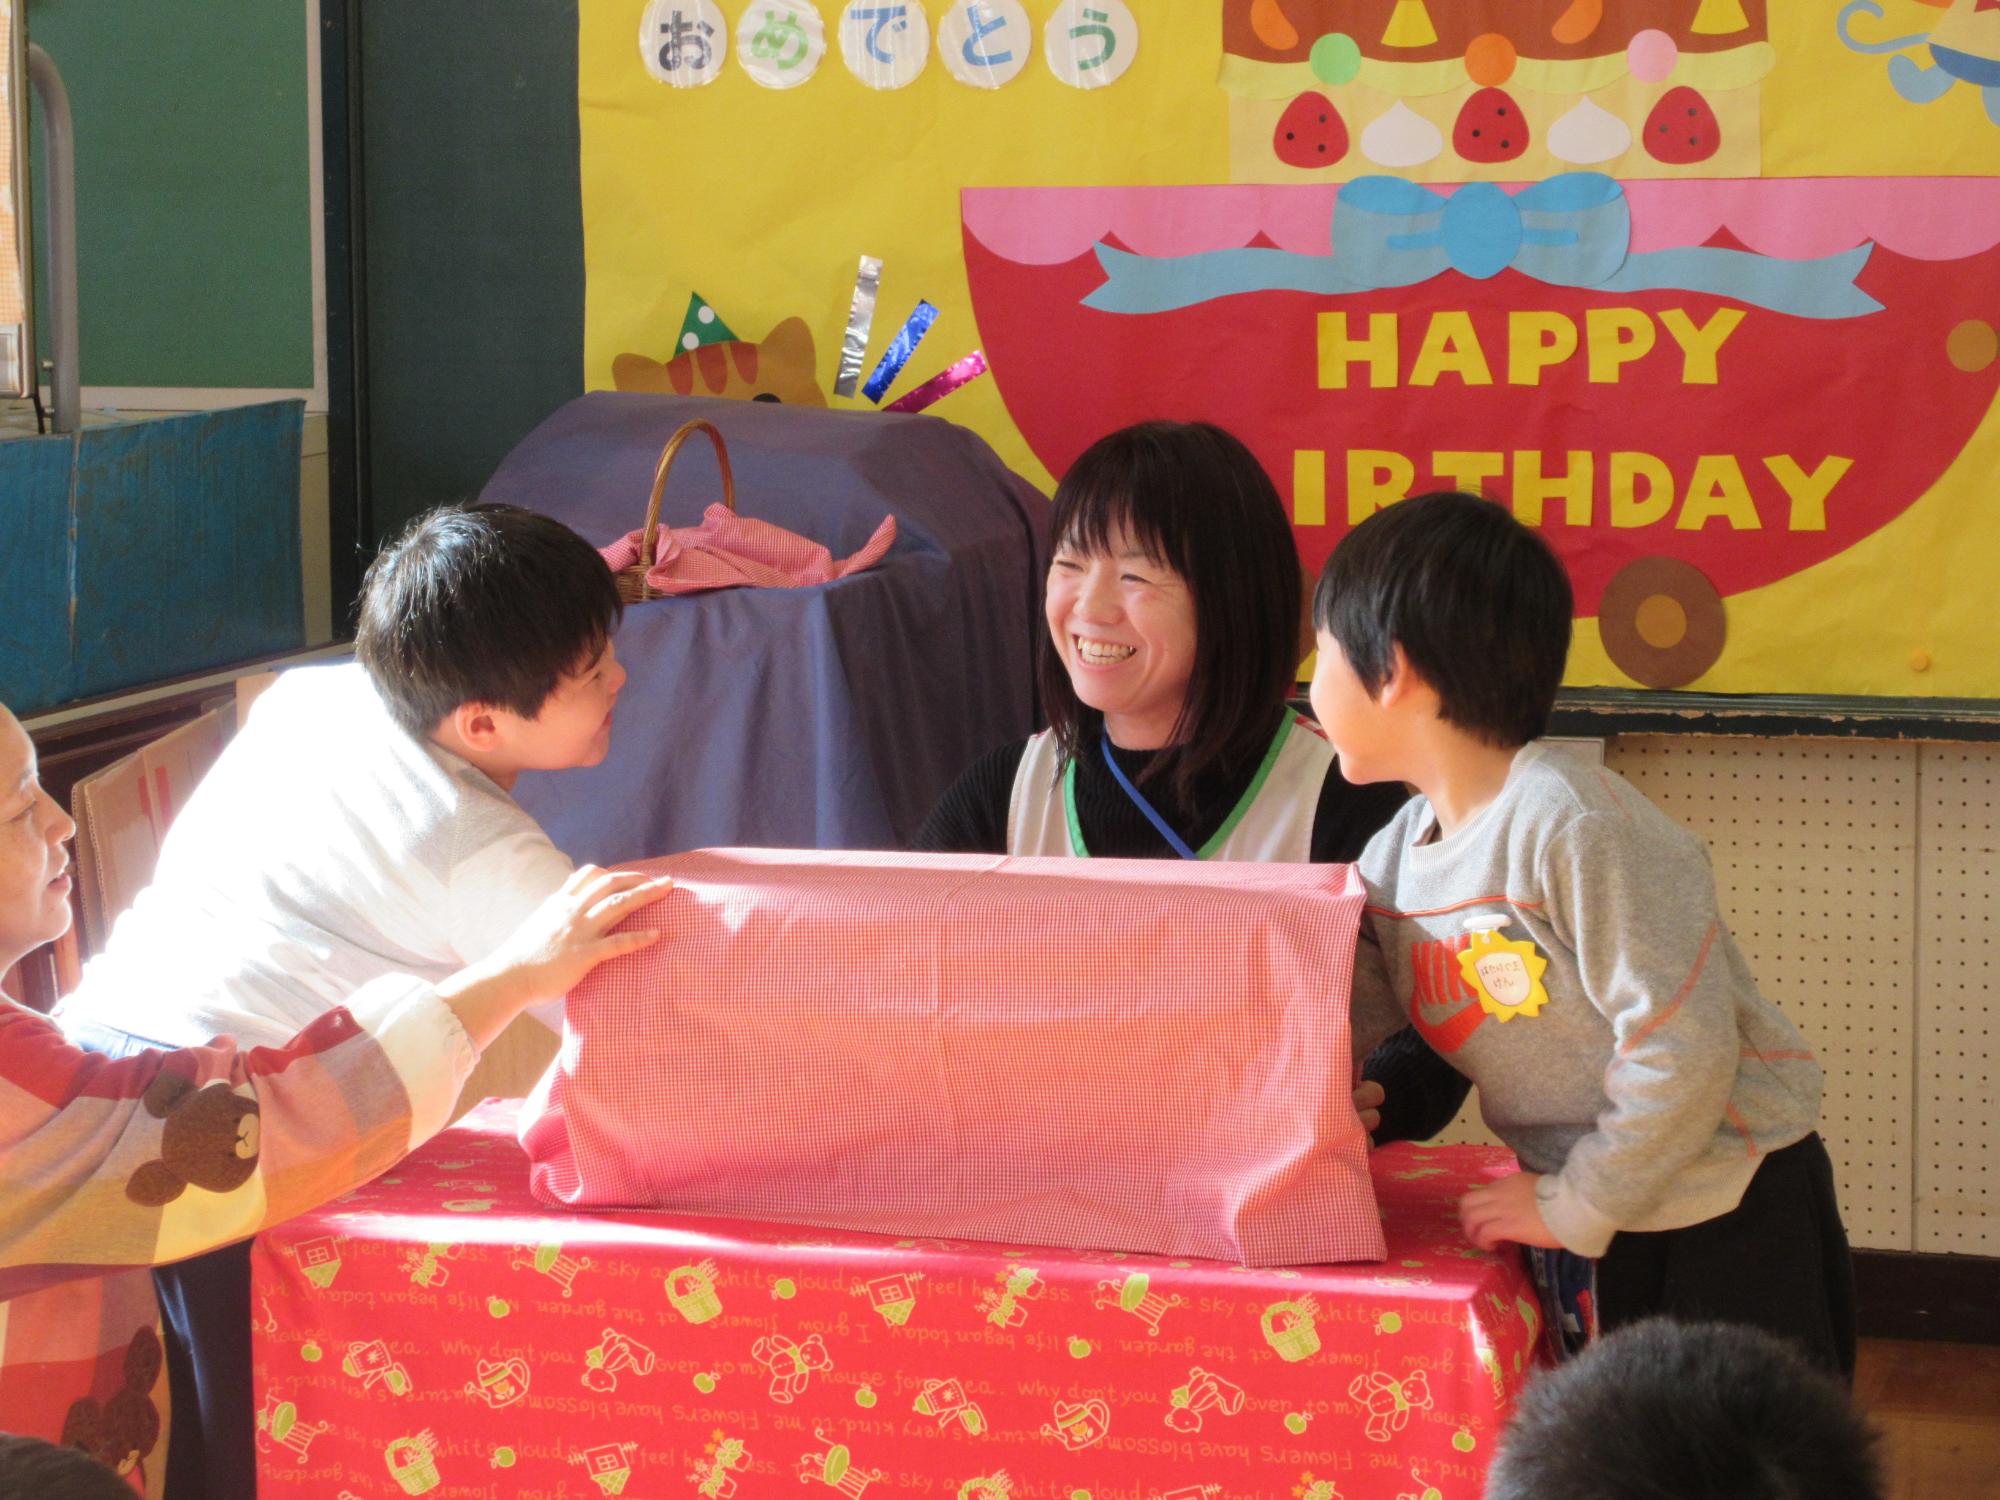 赤い布がかけられた箱の中に誕生月の二人の園児が手を入れている写真